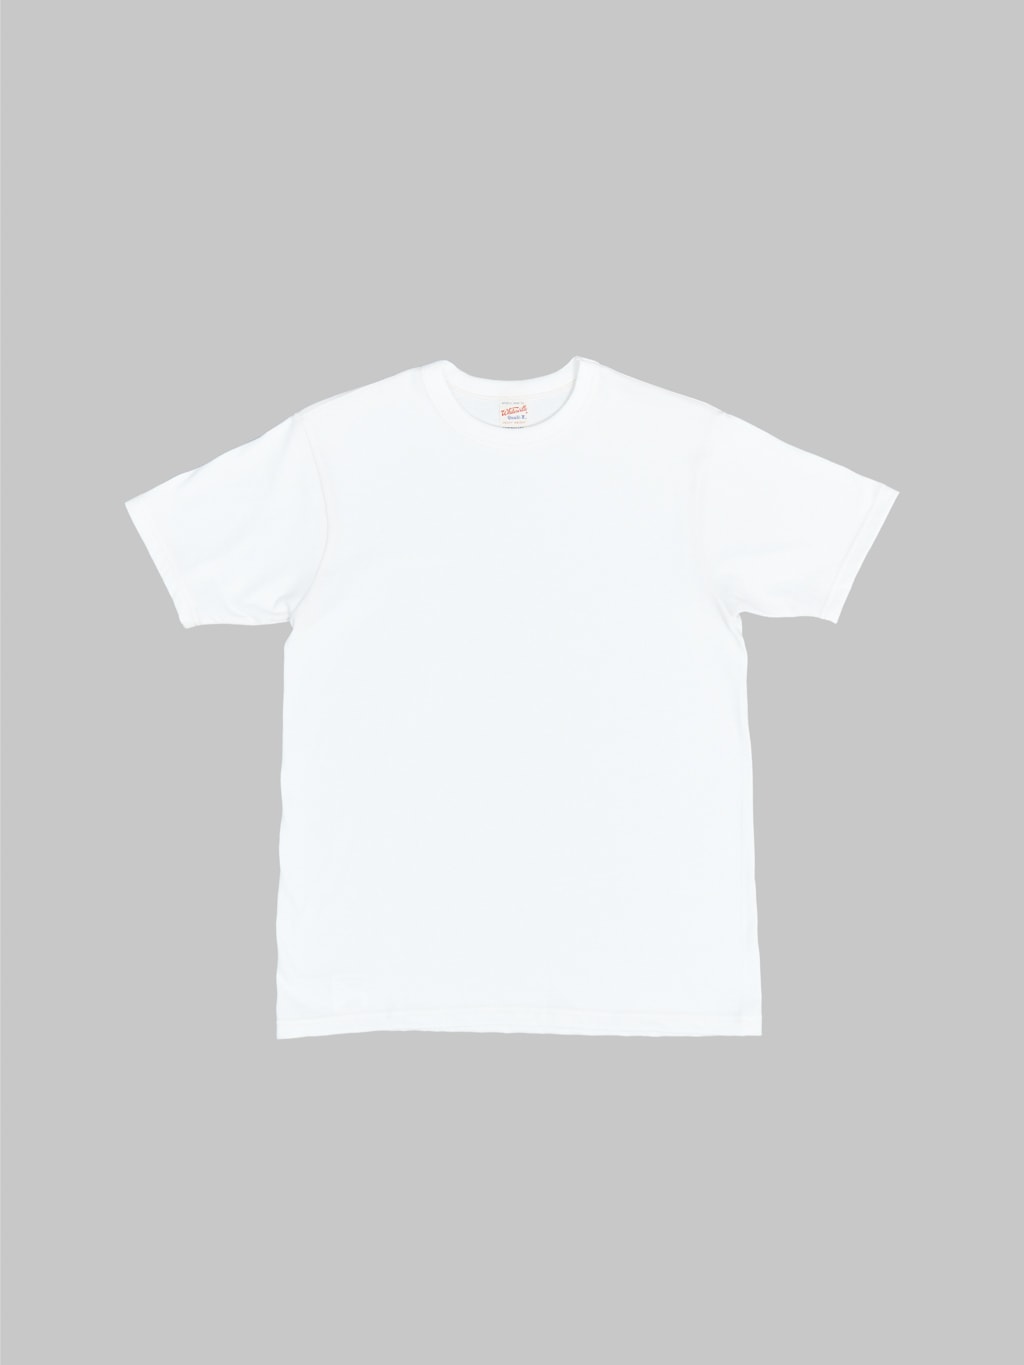 Whitesville Tubular T-Shirt White (2 Pack)